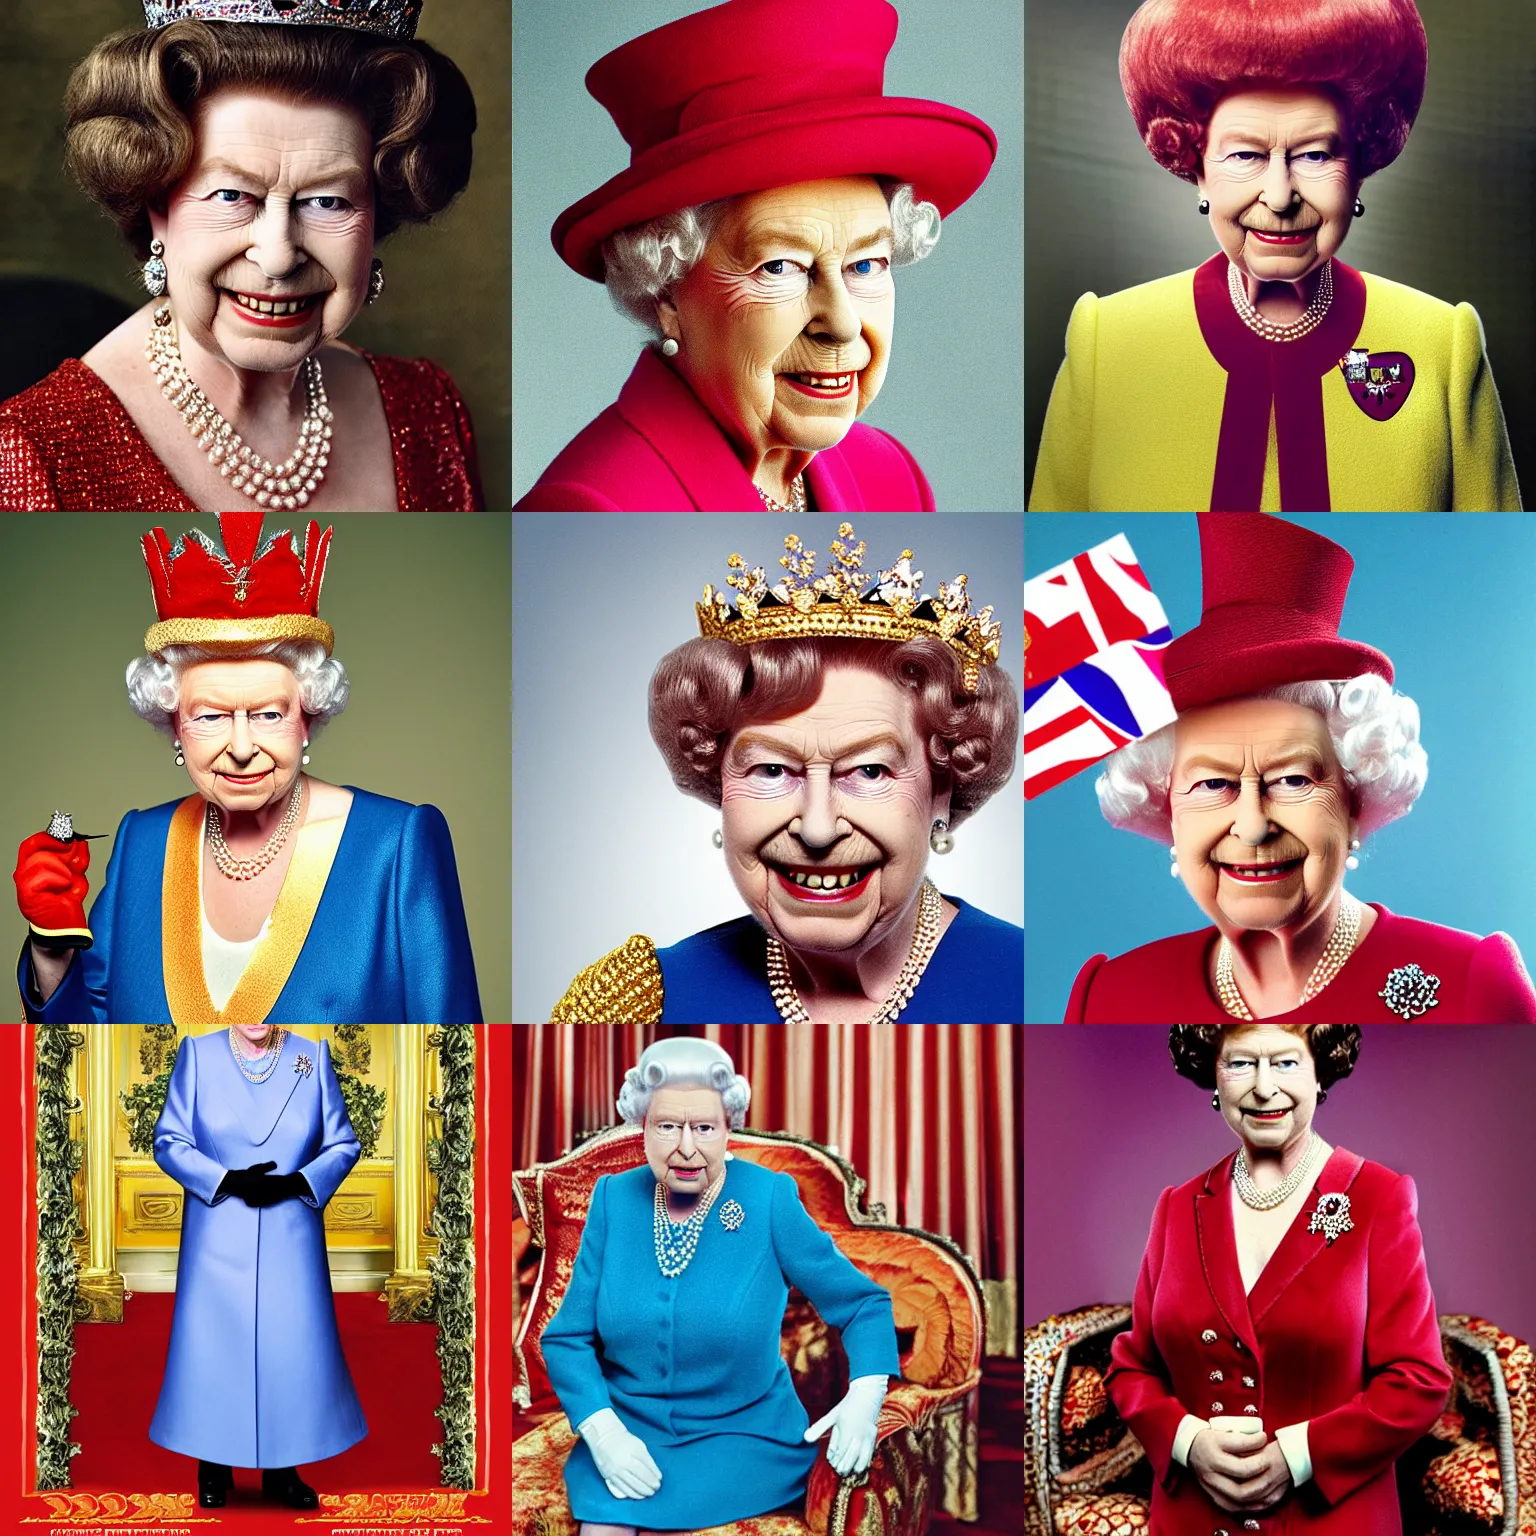 Prompt: Queen Elizabeth in an Austin Powers costume, Austin Powers hair, portrait photograph